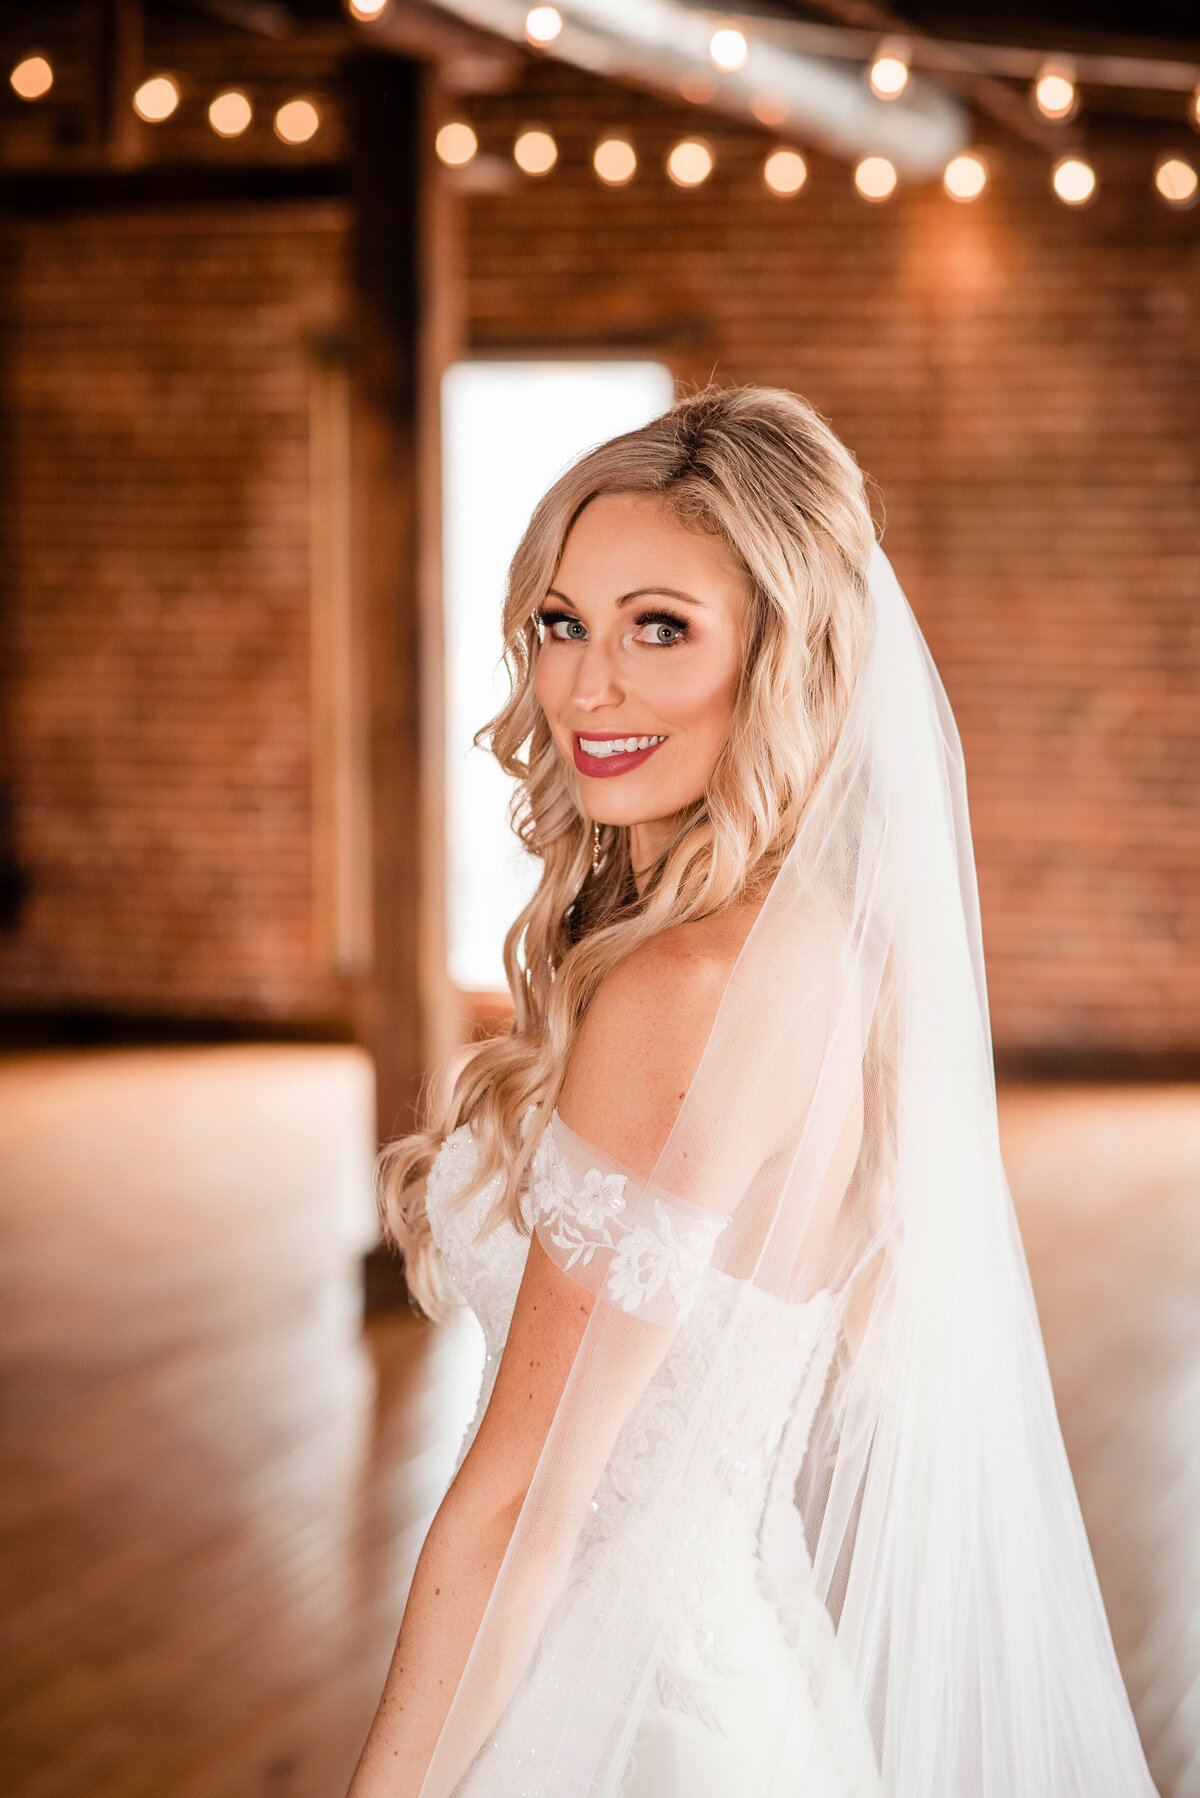 Bride smiling over her shoulder with string light behind her